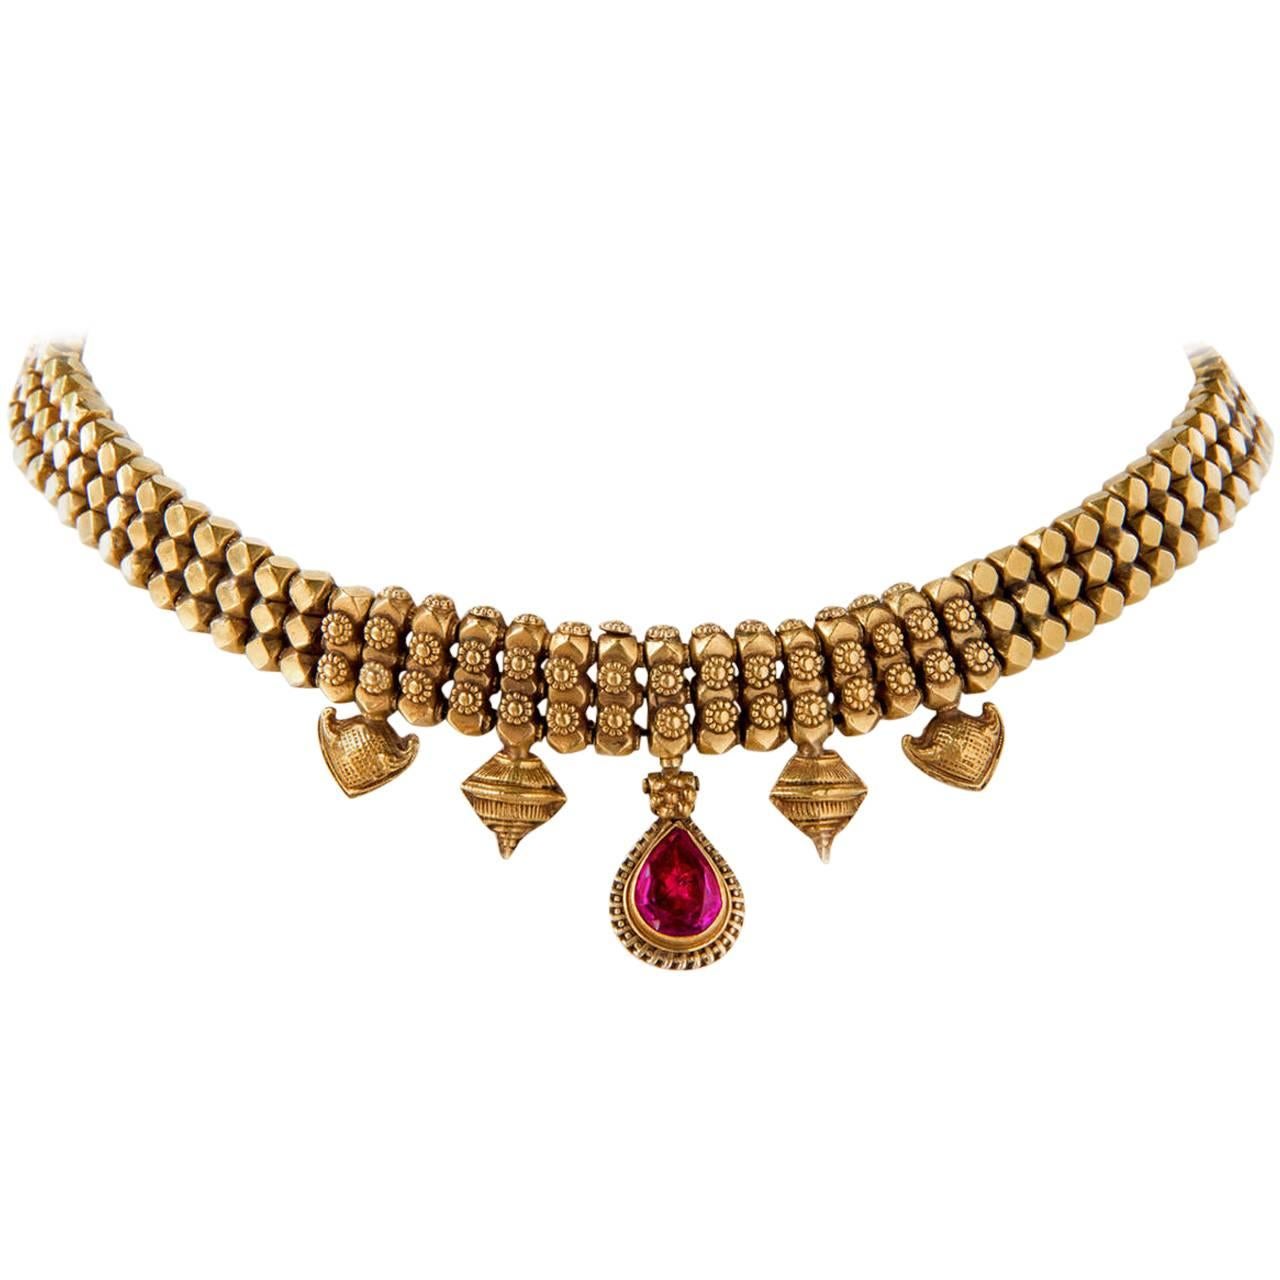 Early 20th Century Antique Maharashtra India Gold Kundan Hindu Emblem Necklace For Sale